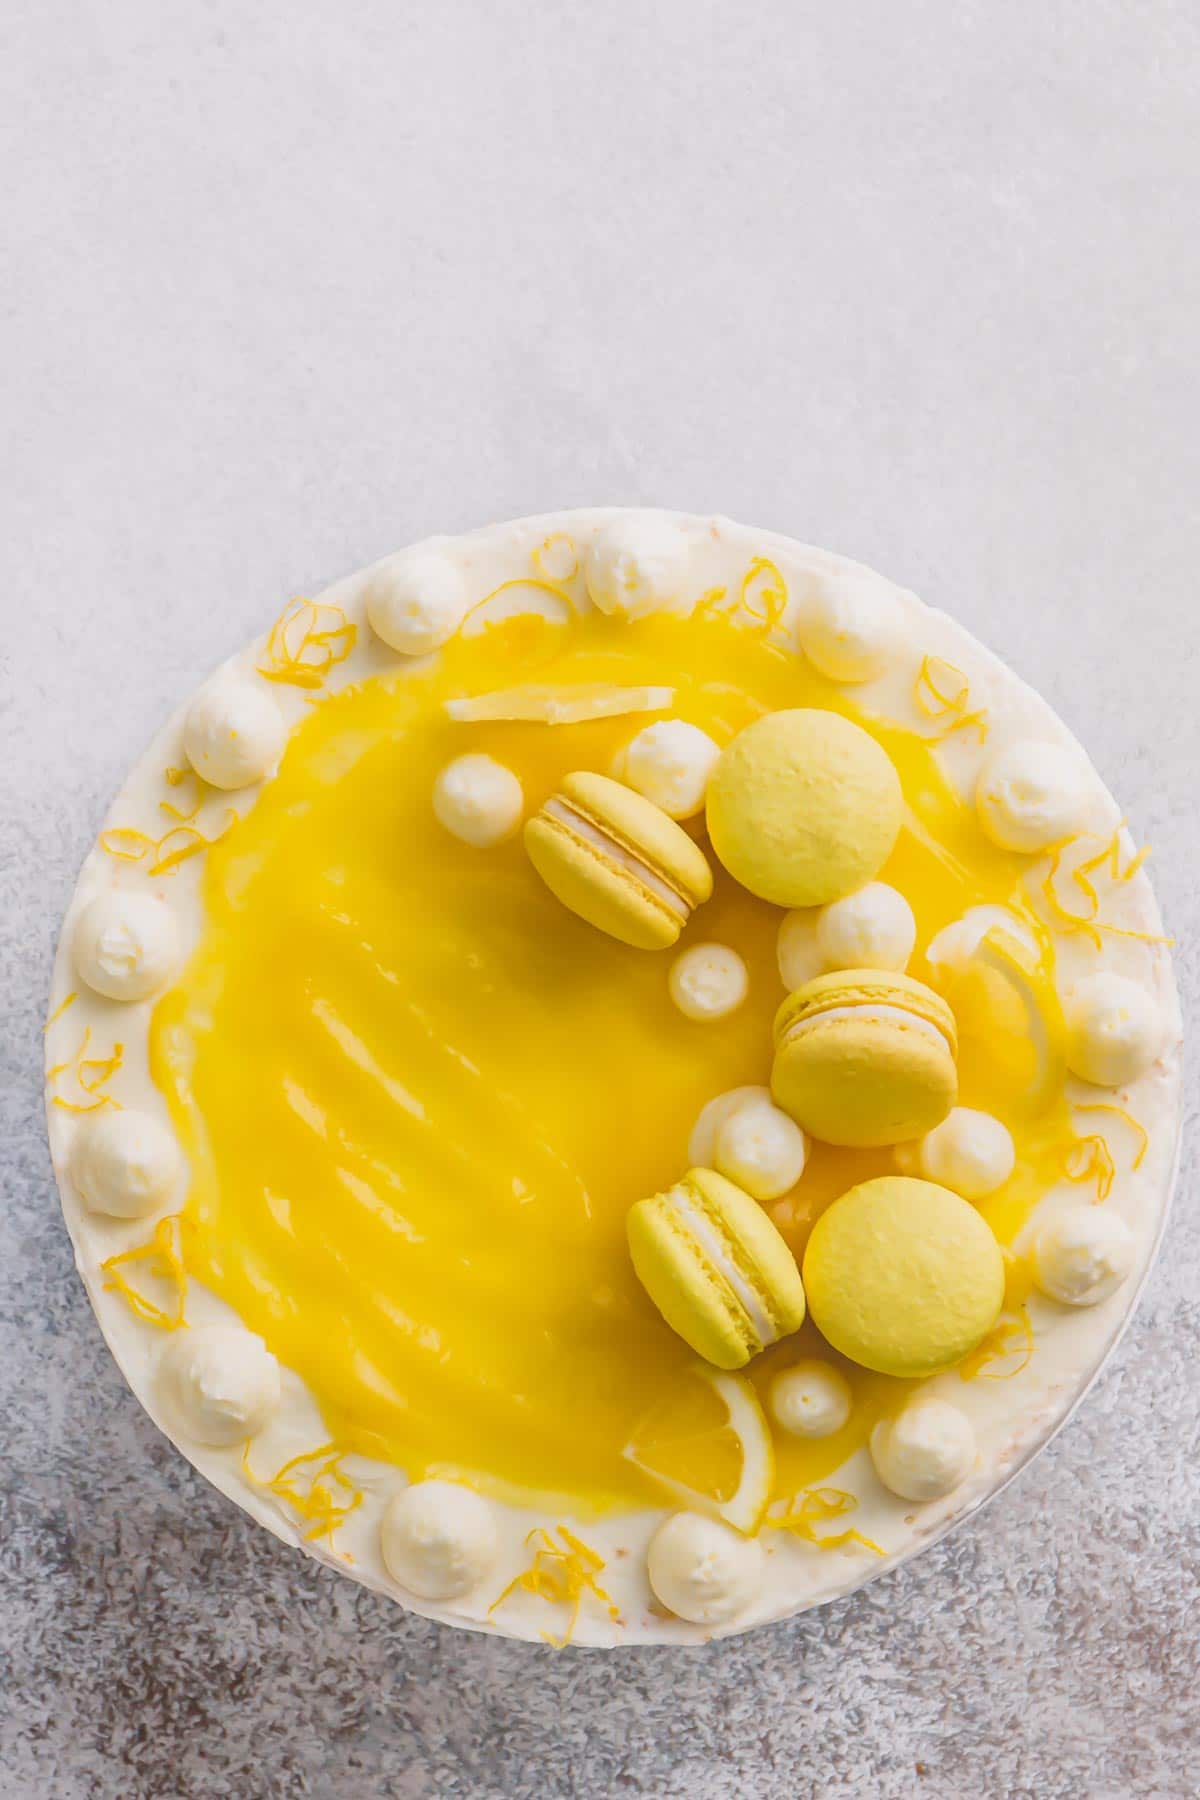 Lemon layer cake, topped with lemon curd and lemon macarons.